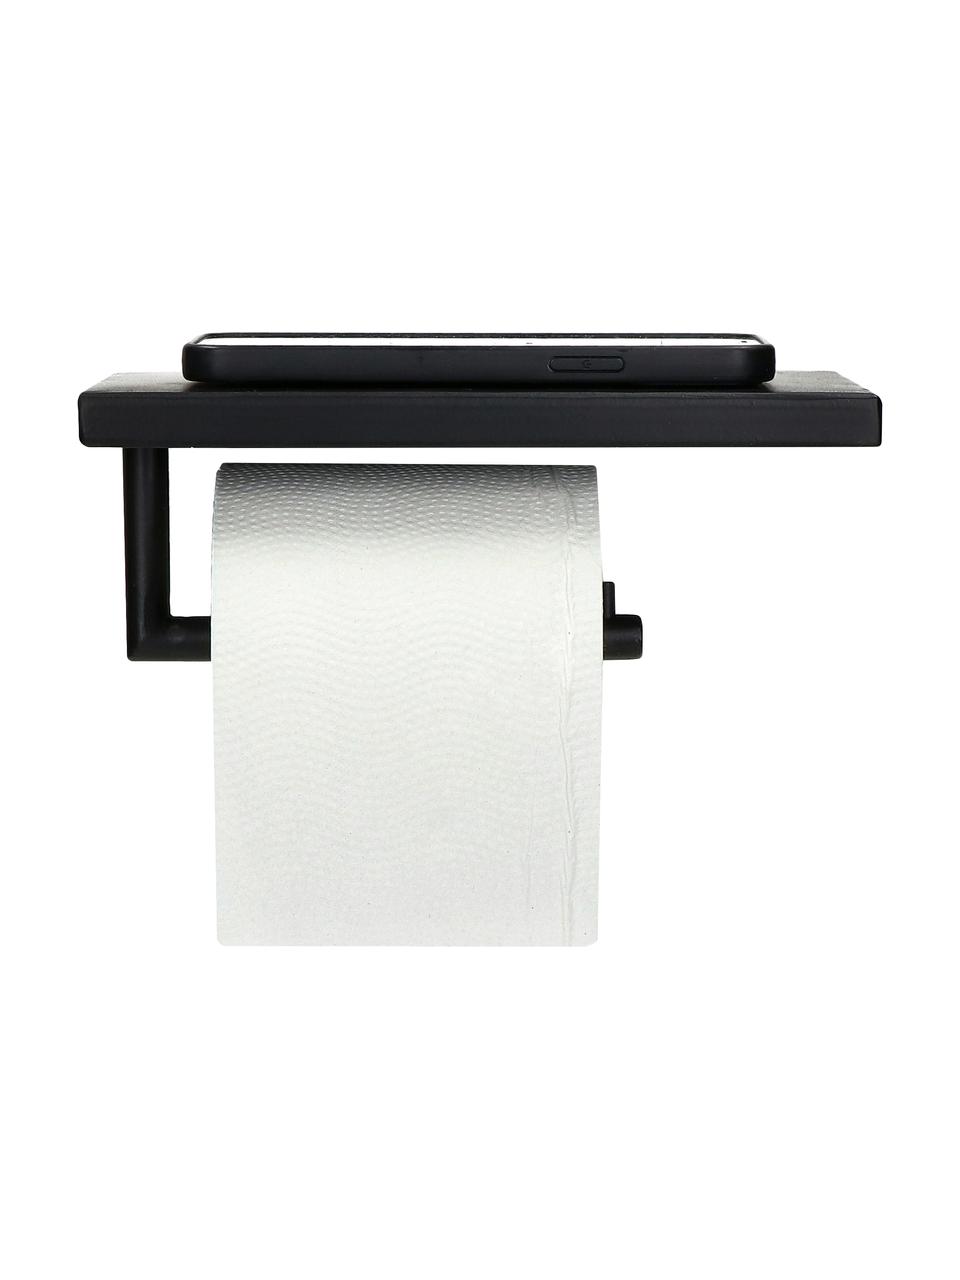 Toilettenpapierhalter Fritz mit Ablagefläche, Metall, beschichtet, Schwarz, B 20 x H 8 cm